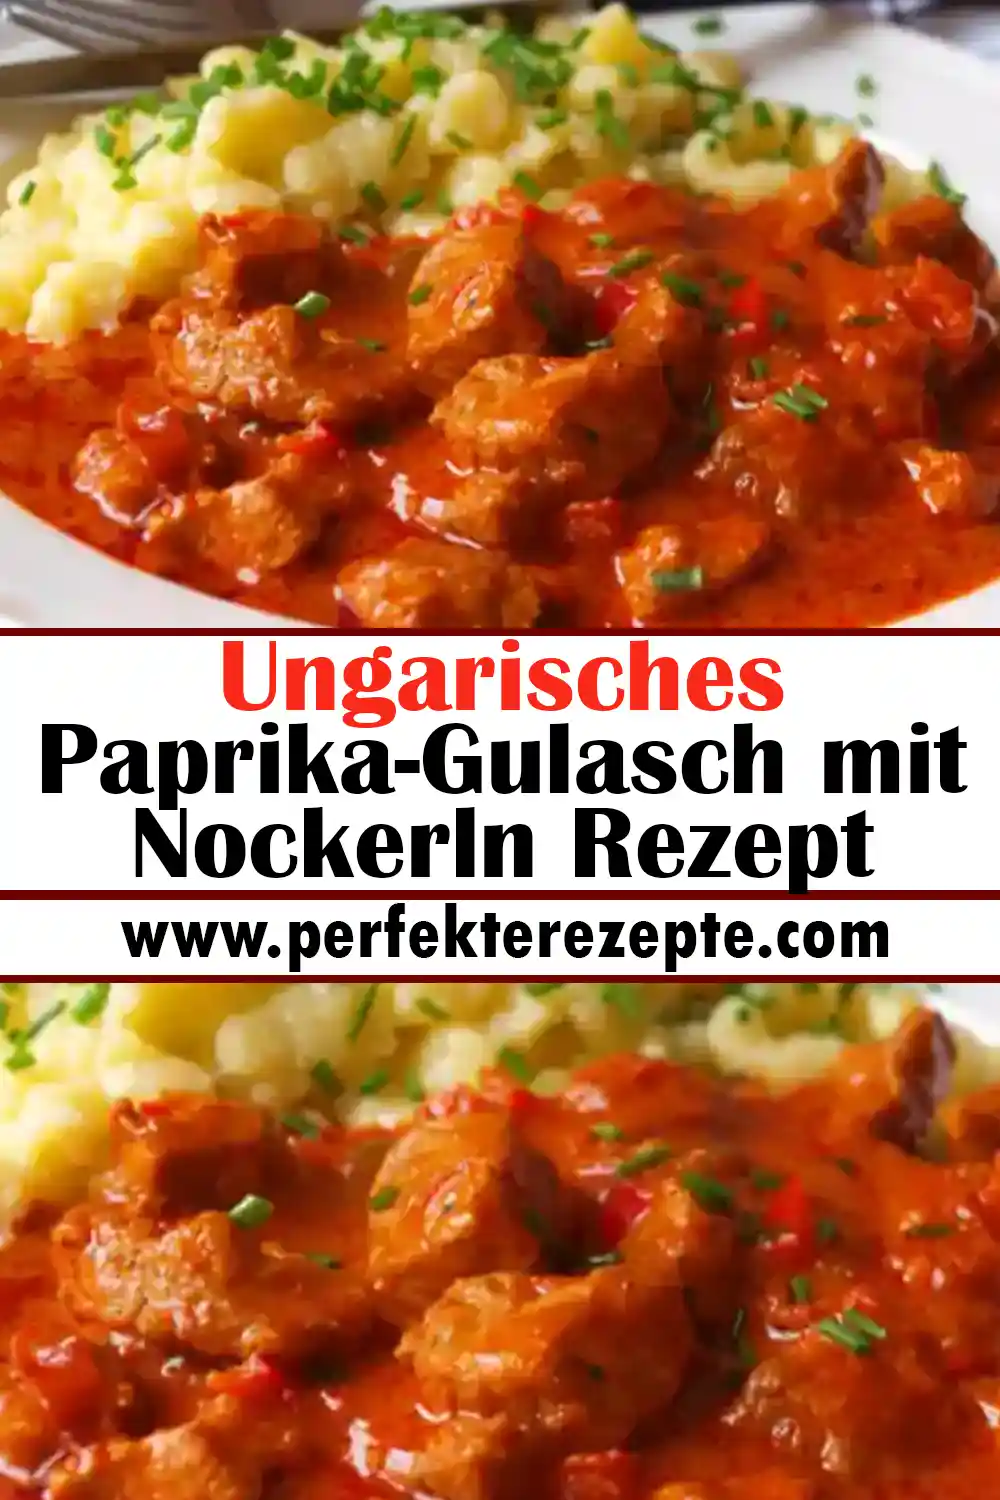 Ungarisches Paprika-Gulasch mit Nockerln Rezept